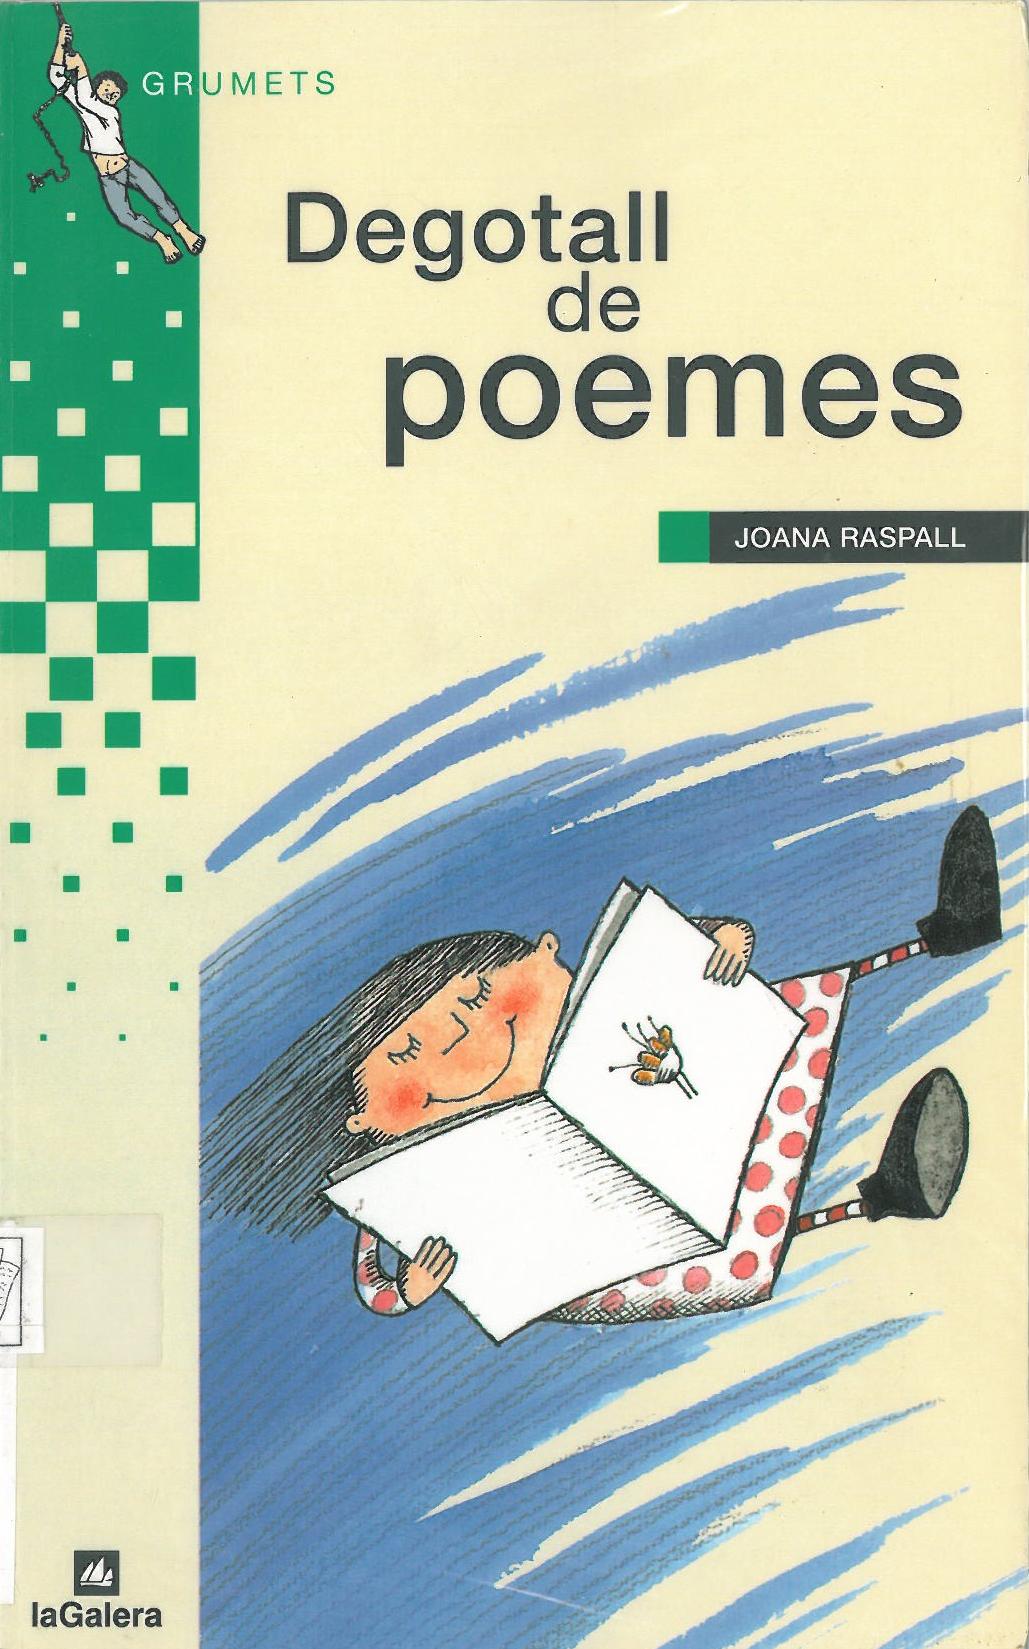 La poesia de Joana Raspall